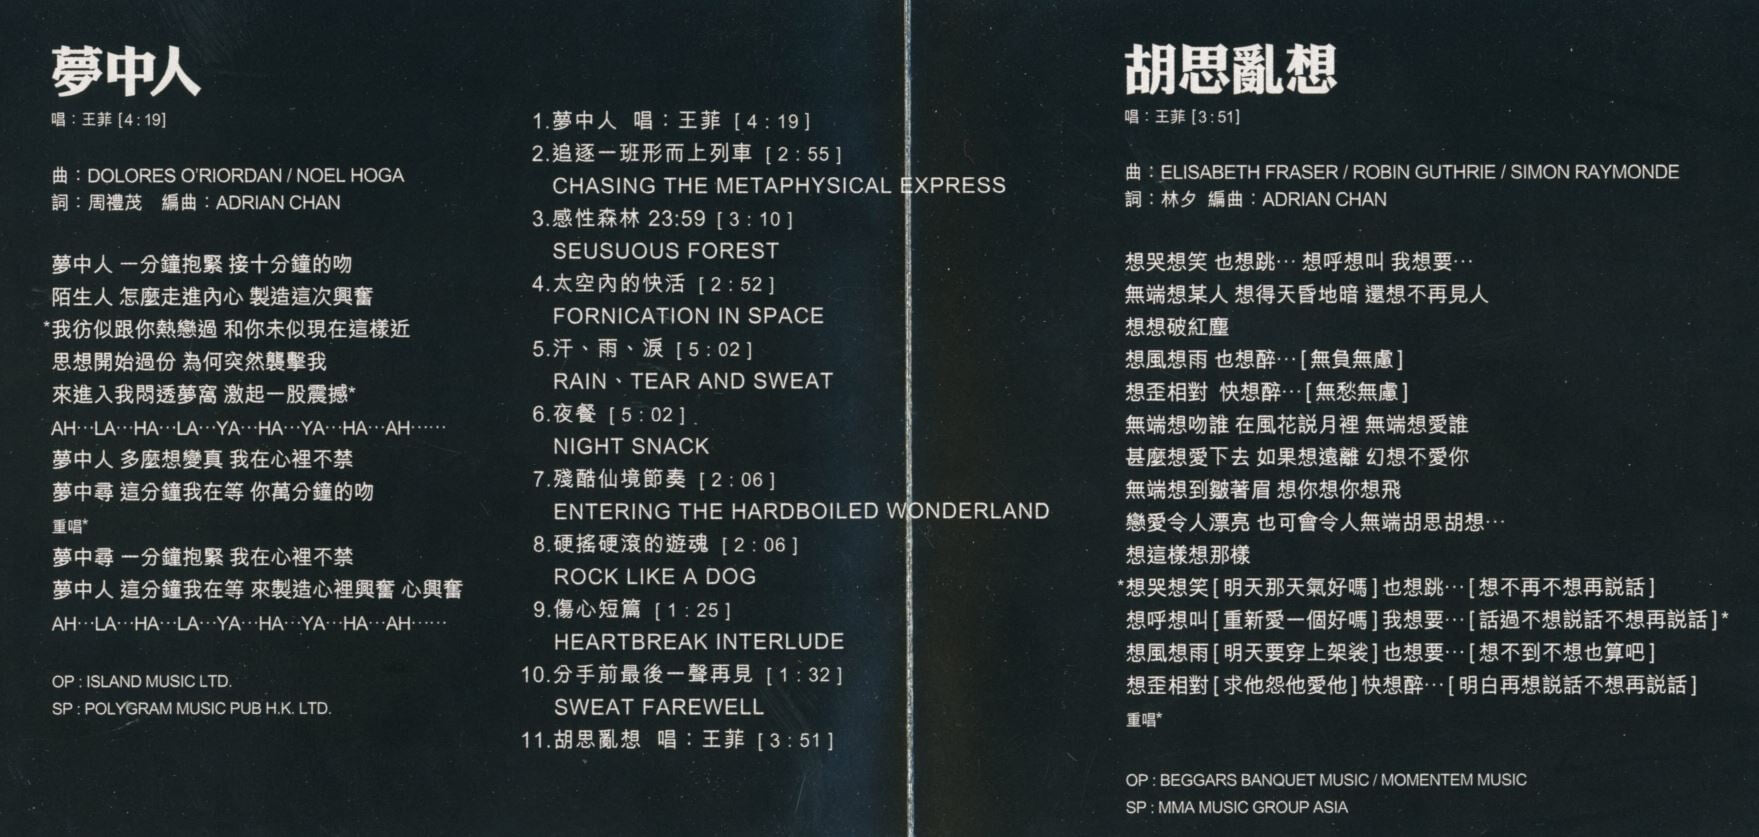 중경삼림(重慶森林) - 중경삼림(Chungking Express) OST [Single]